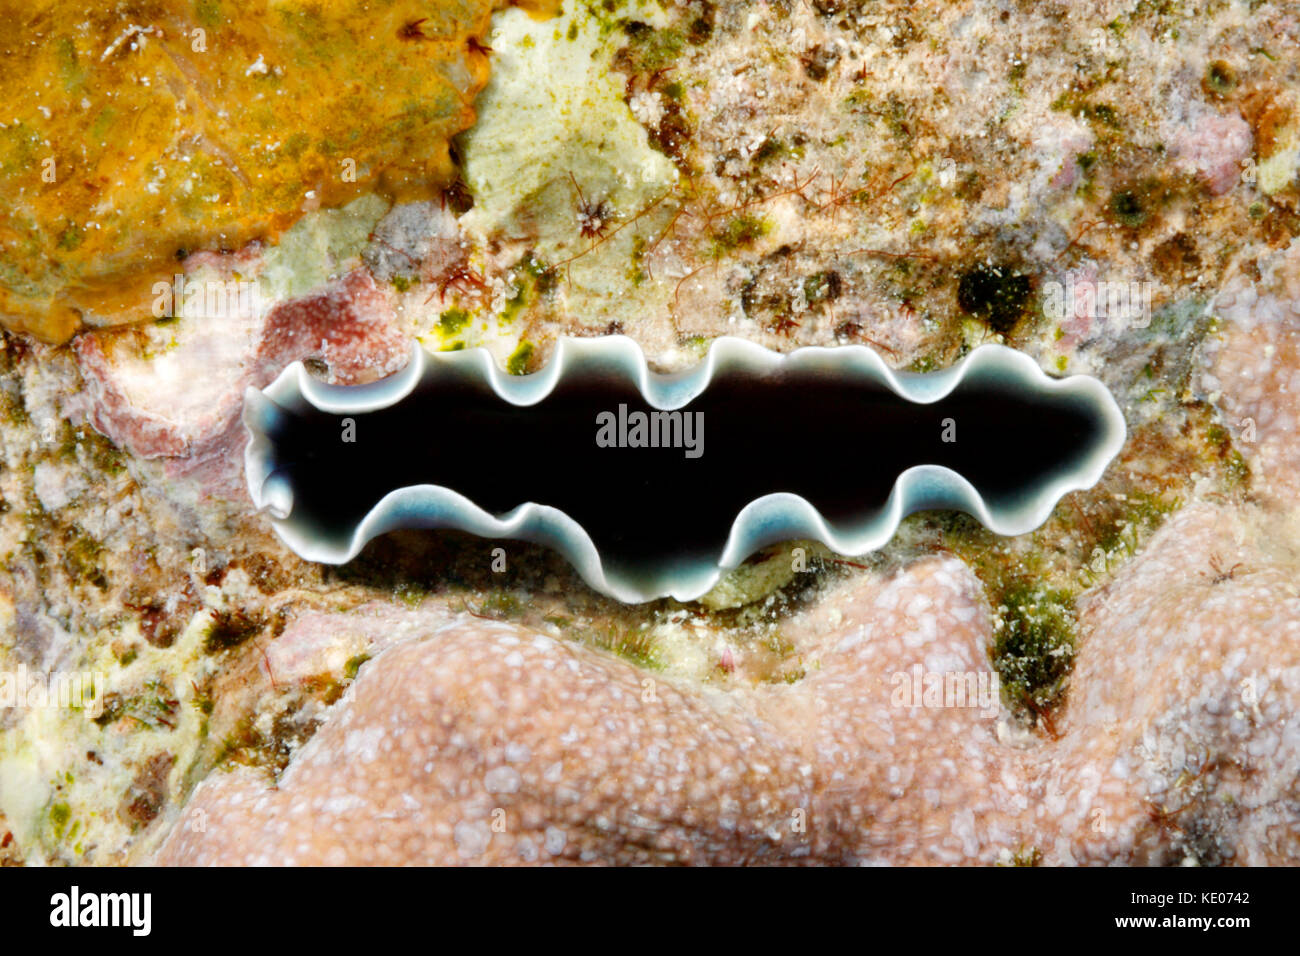 Flatworm marini, Pseudoceros cfr nov sp. 9 - variazione di colore. Secondo gli esperti, questa flatworm non è ancora stato descritto. Foto Stock